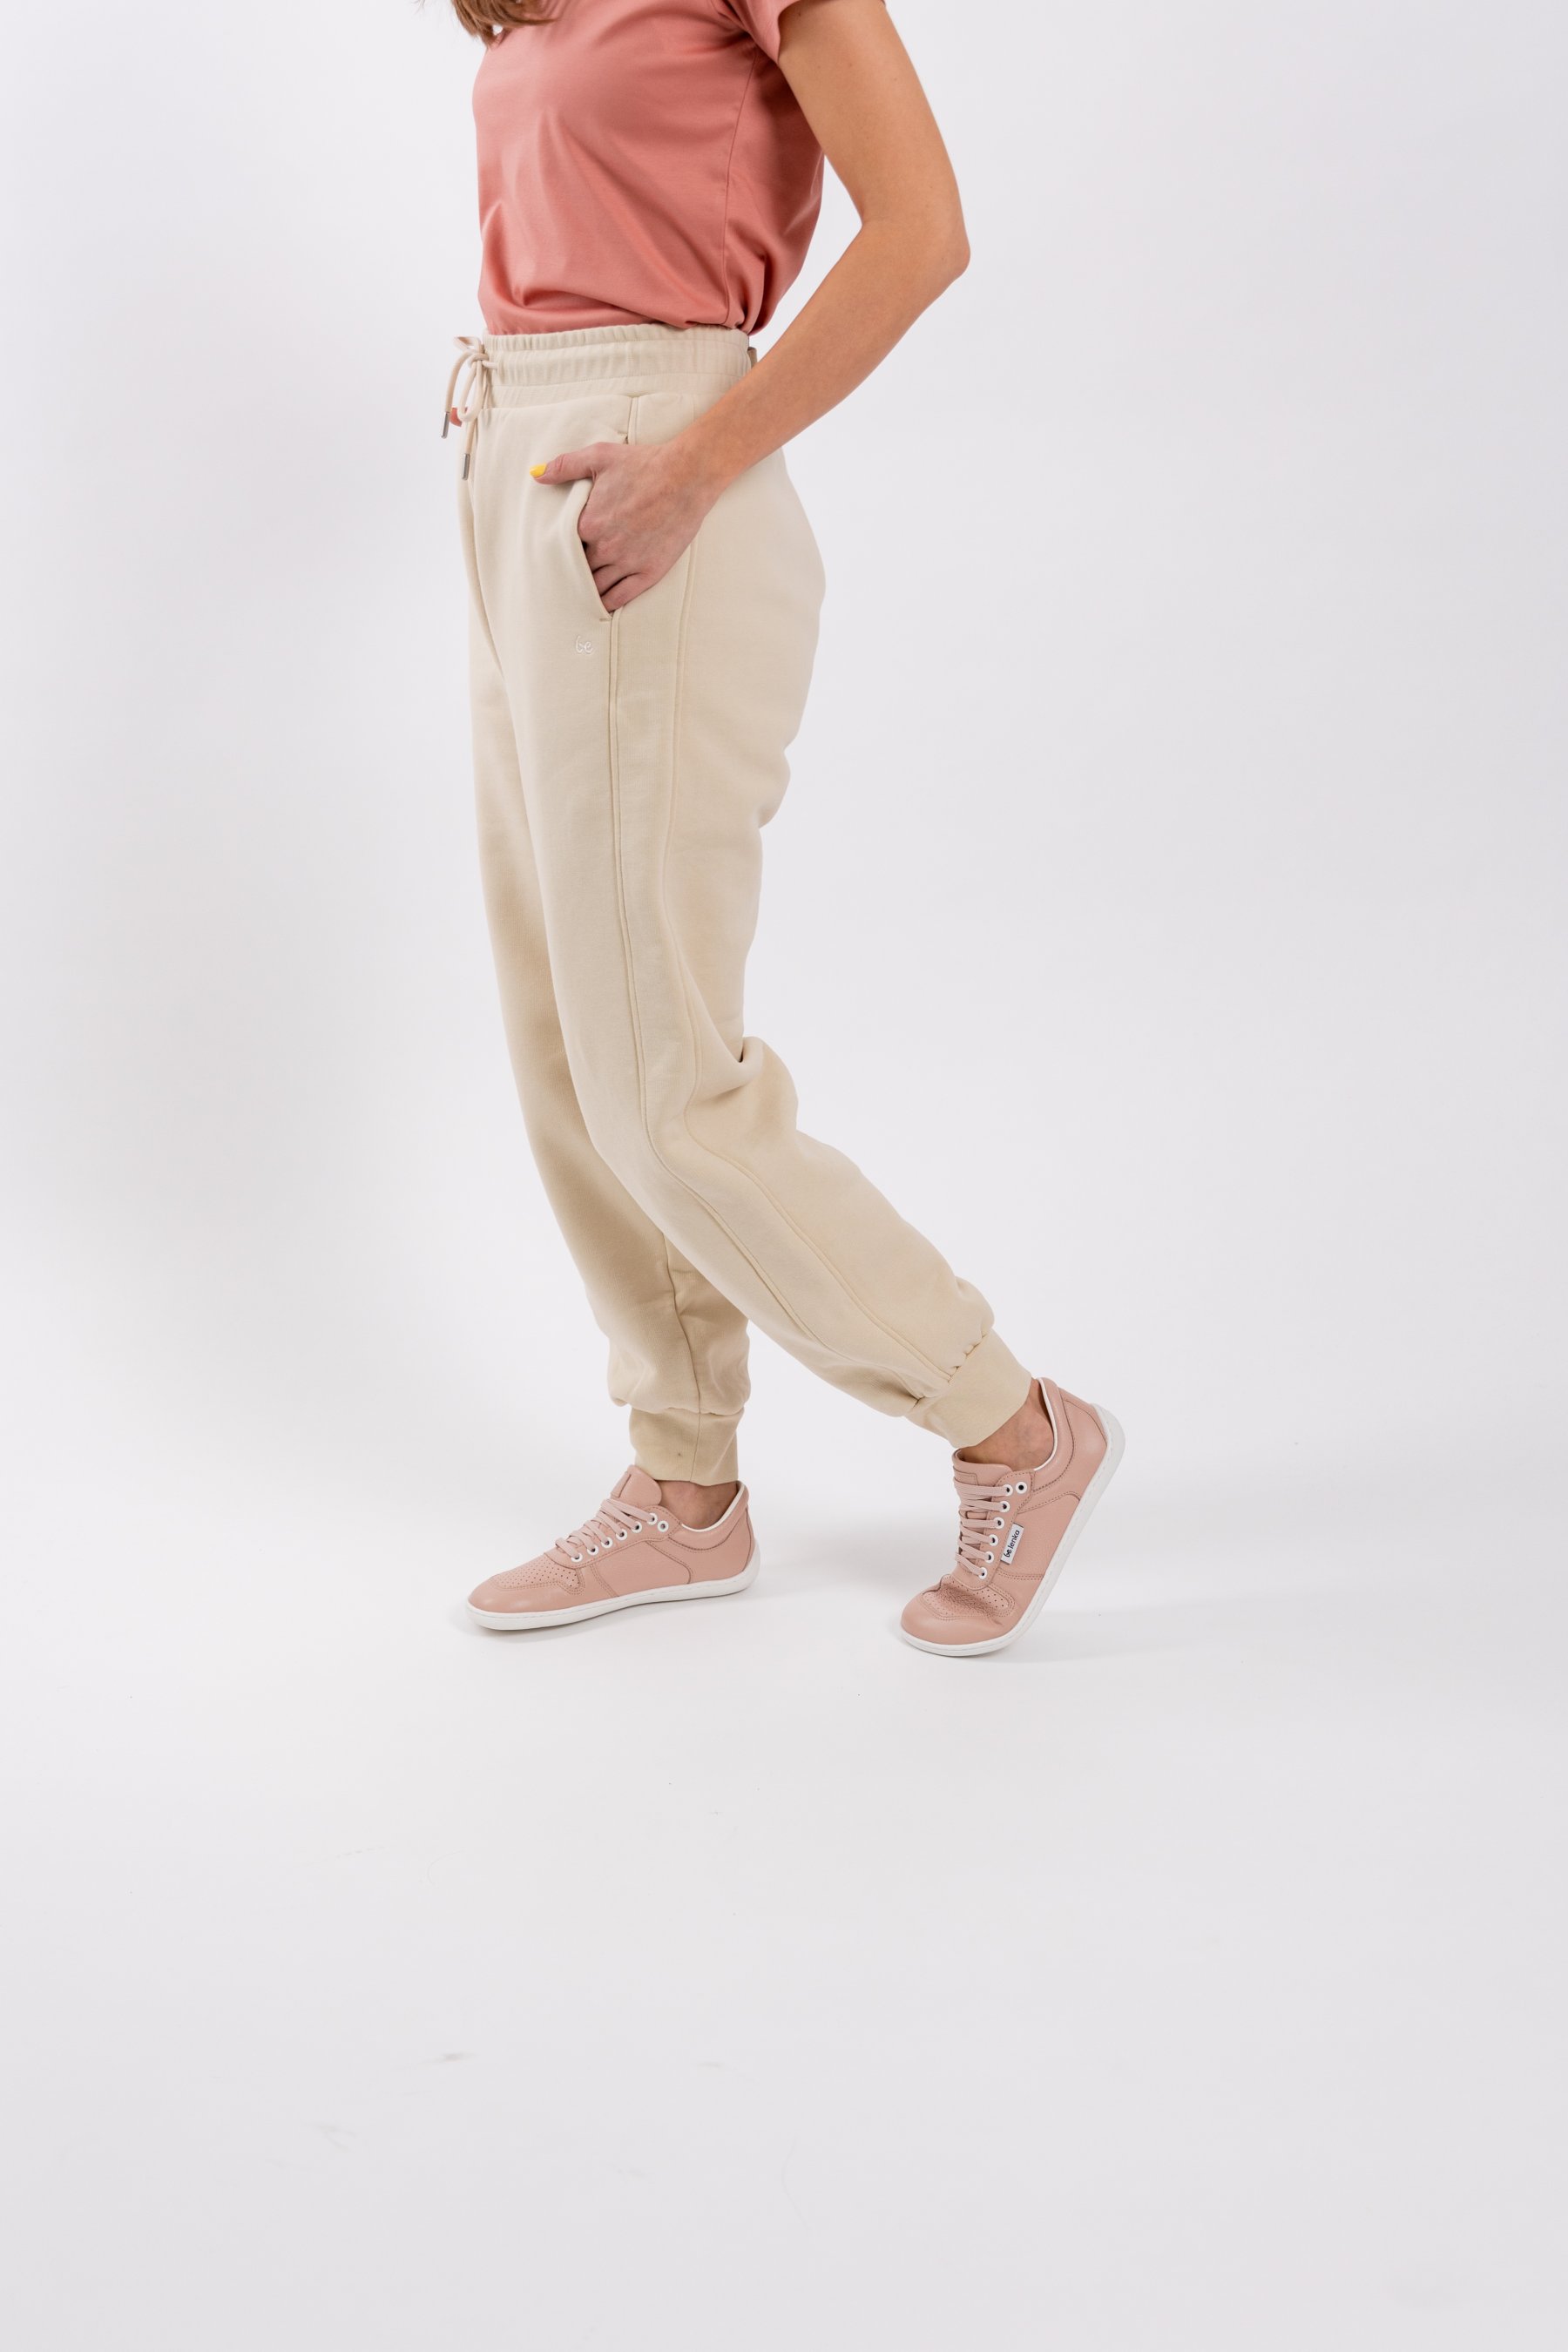 Hermès Shorts and Pants for Women | Hermès USA